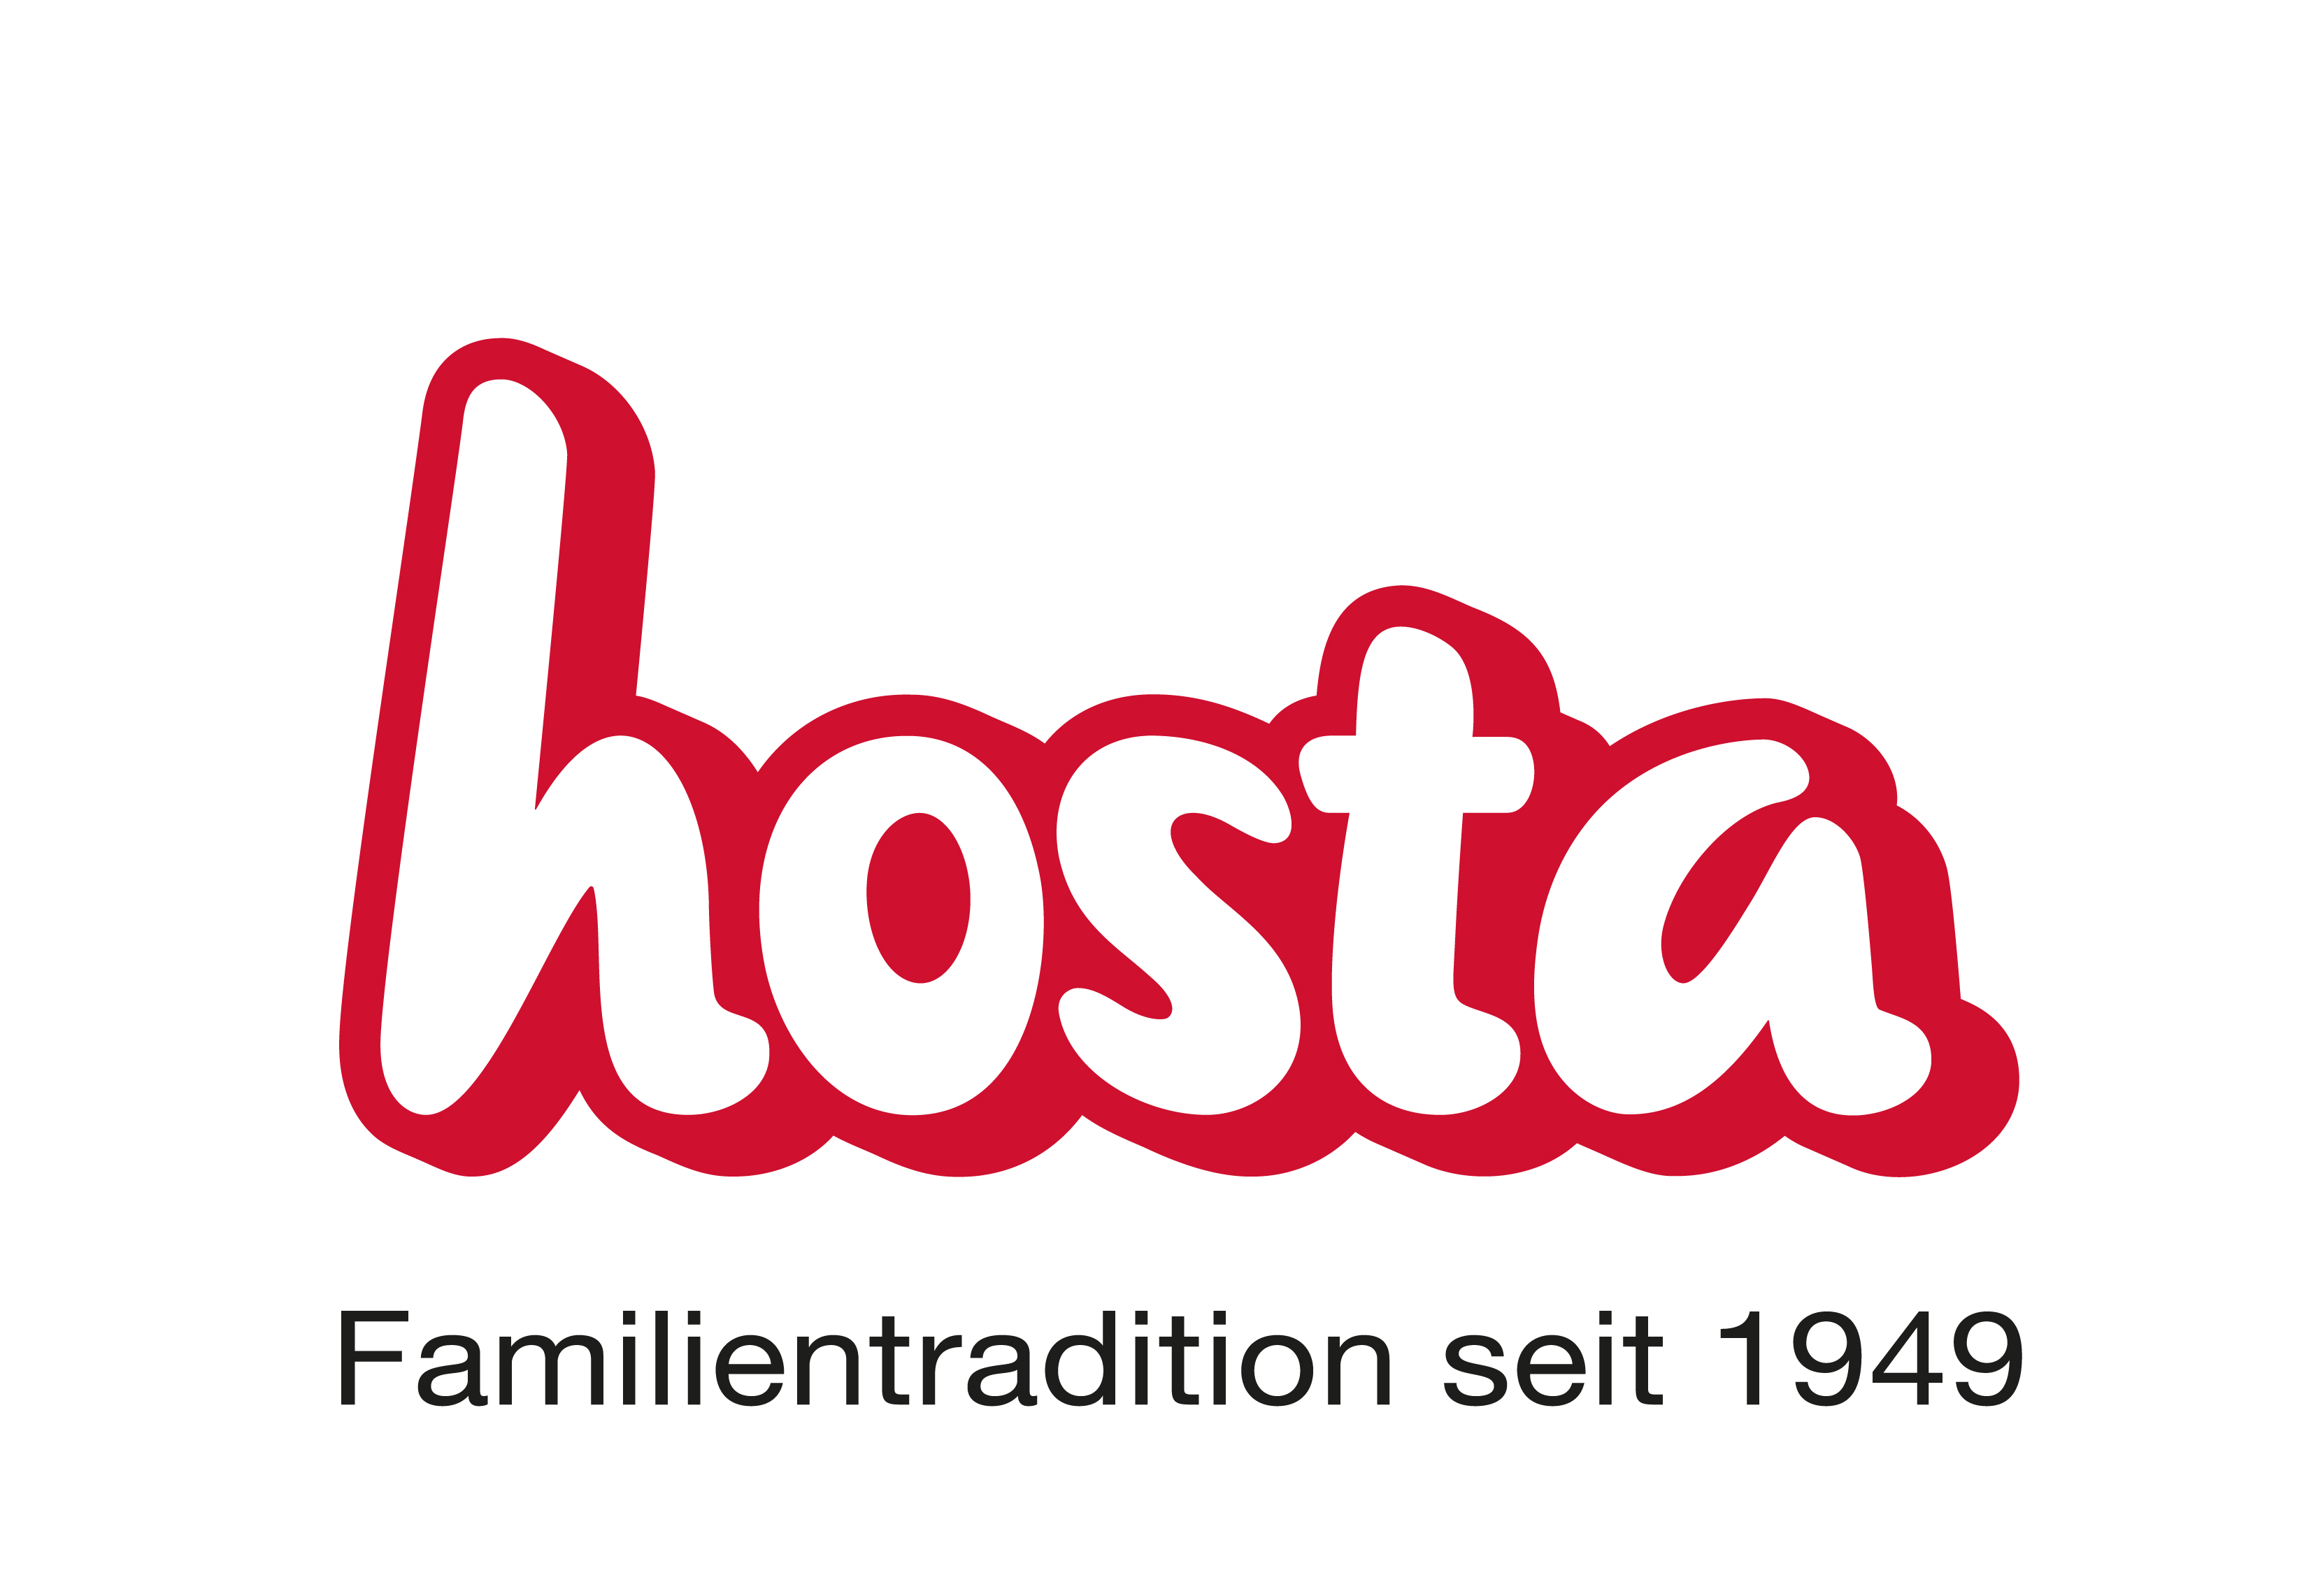 Hosta-logo-B2B-claim-2020-RGB-pos.jpg